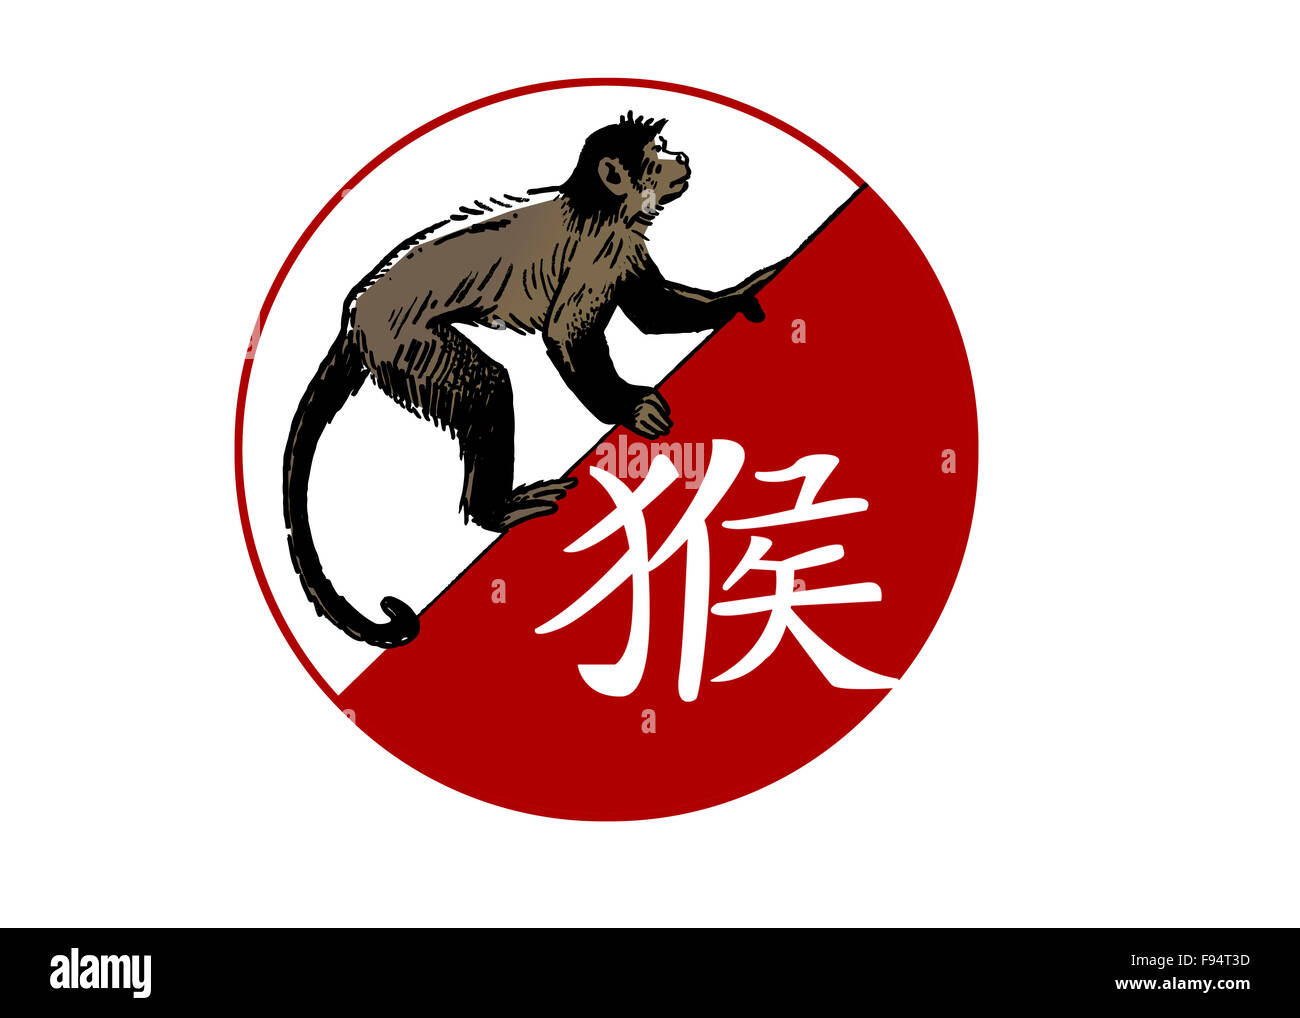 Monkey Chinese Horoscope Sign Stock Photos & Monkey Chinese Horoscope